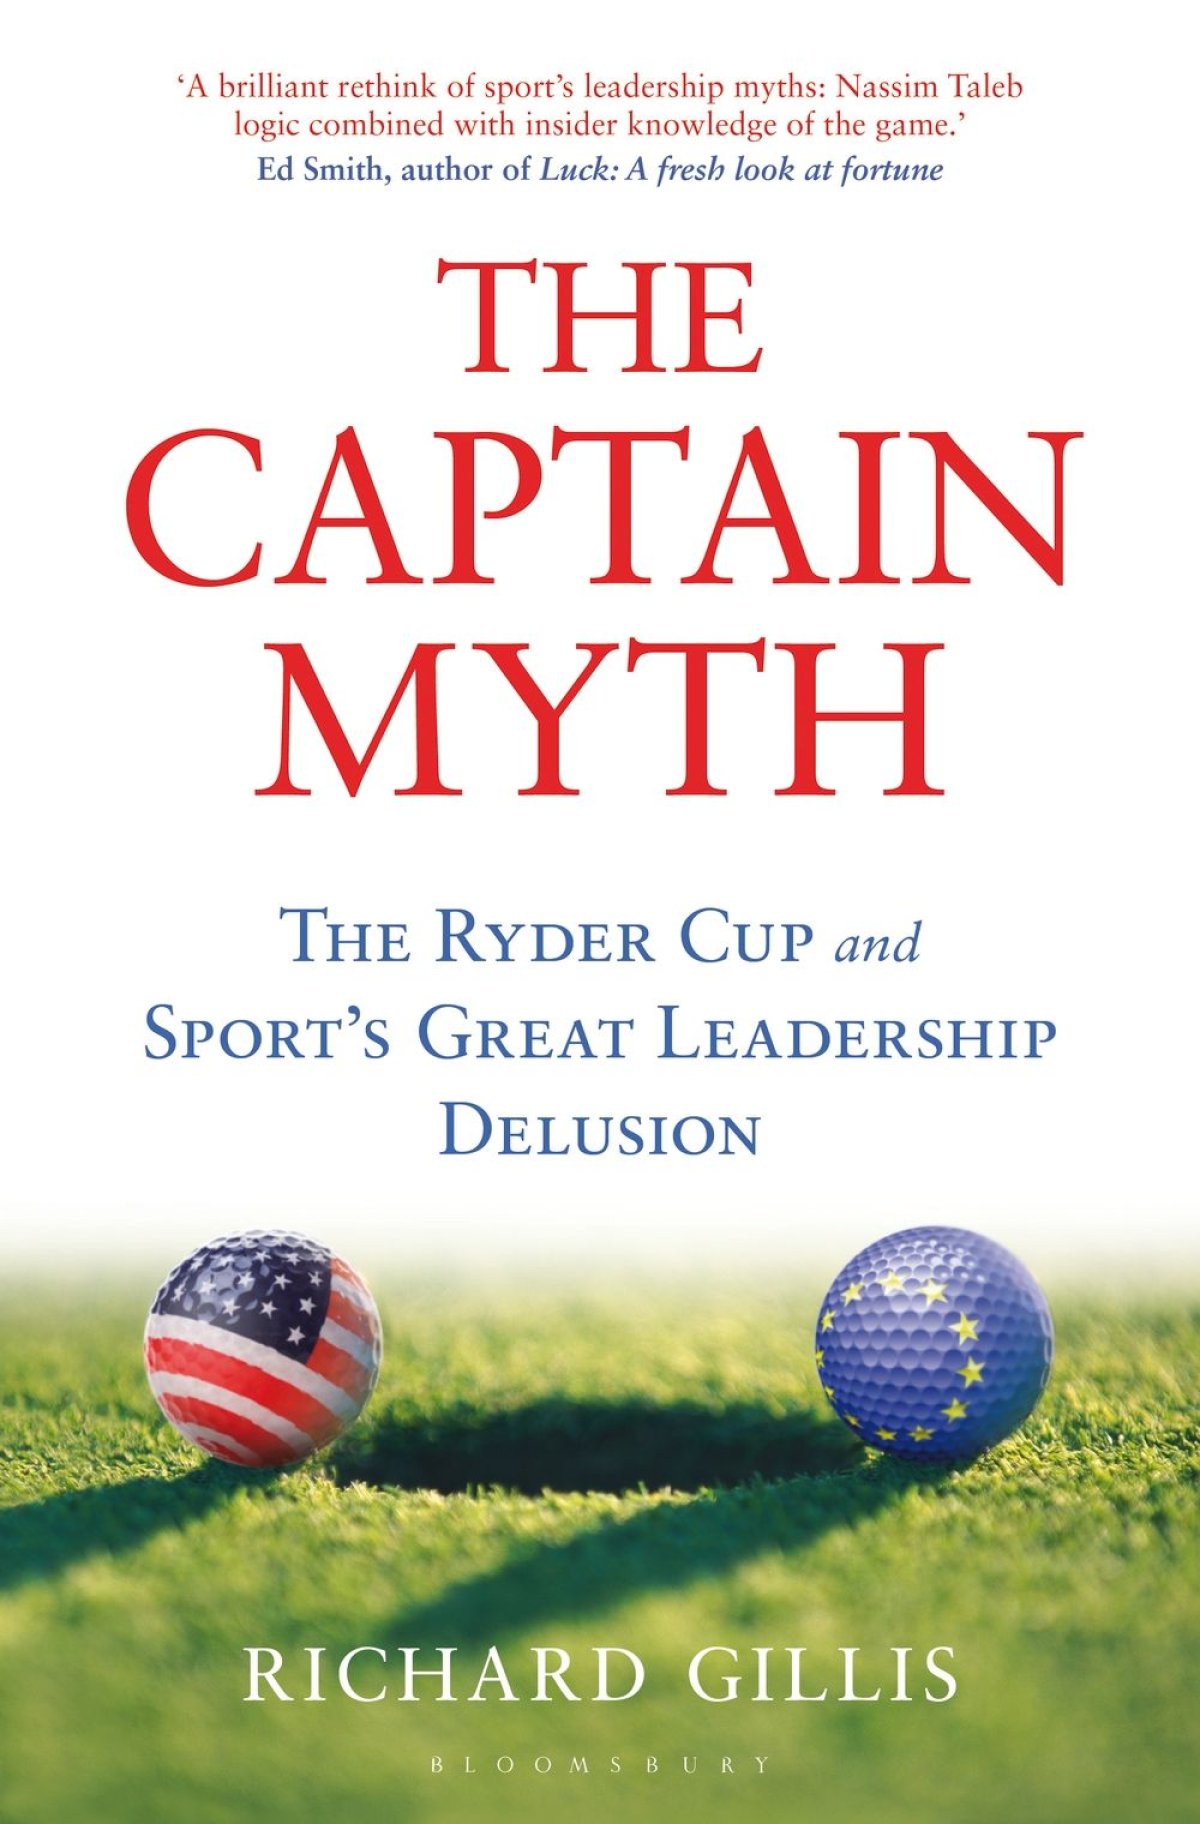 The Captain Myth by Richard Gillis.